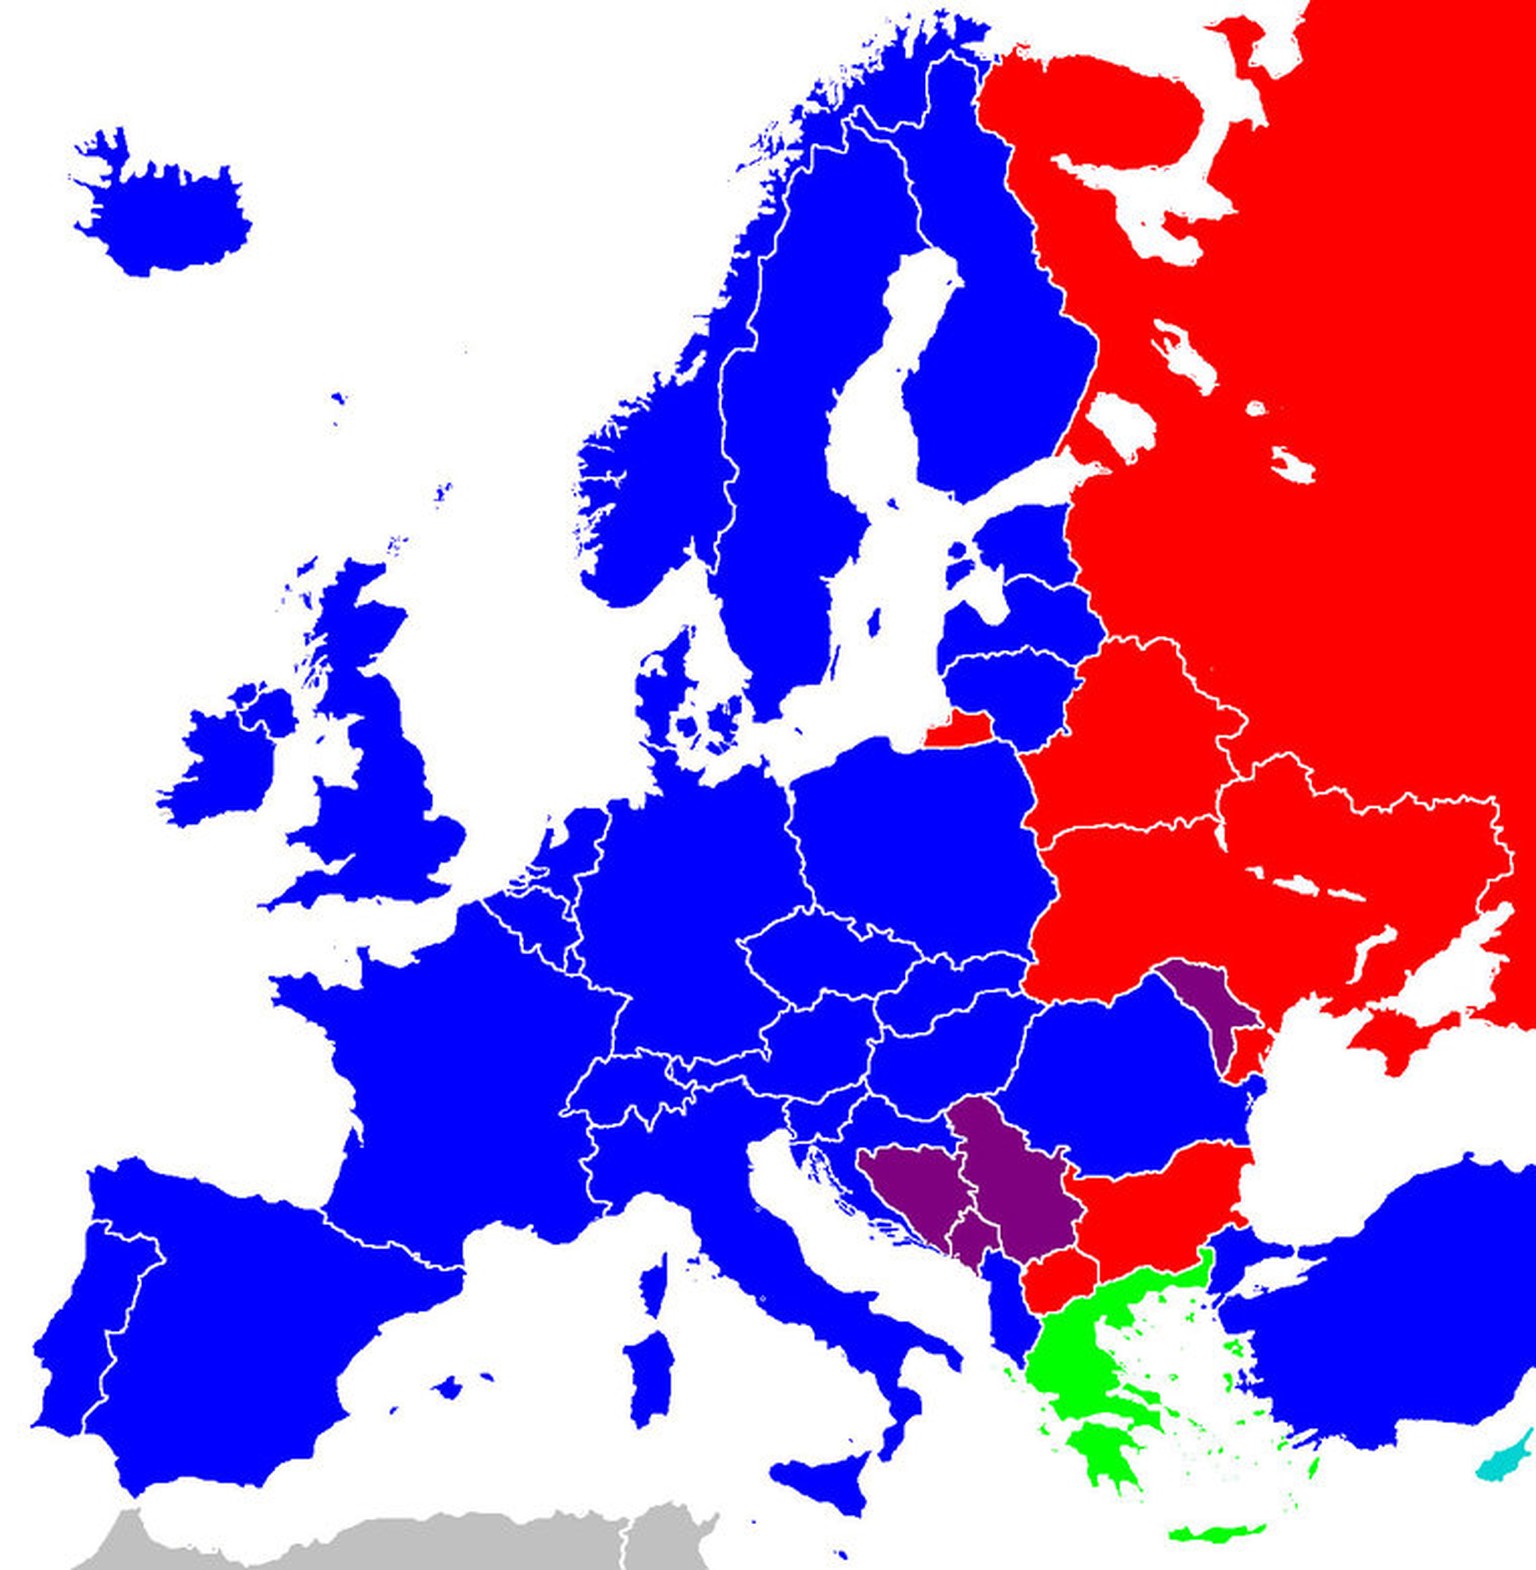 In Europa gibt es das lateinische (blau), kyrillische (rot) und griechische (grün) Alphabet sowie Gebiete, wo zwei Alphabete (lila)&nbsp;genutzt werden.